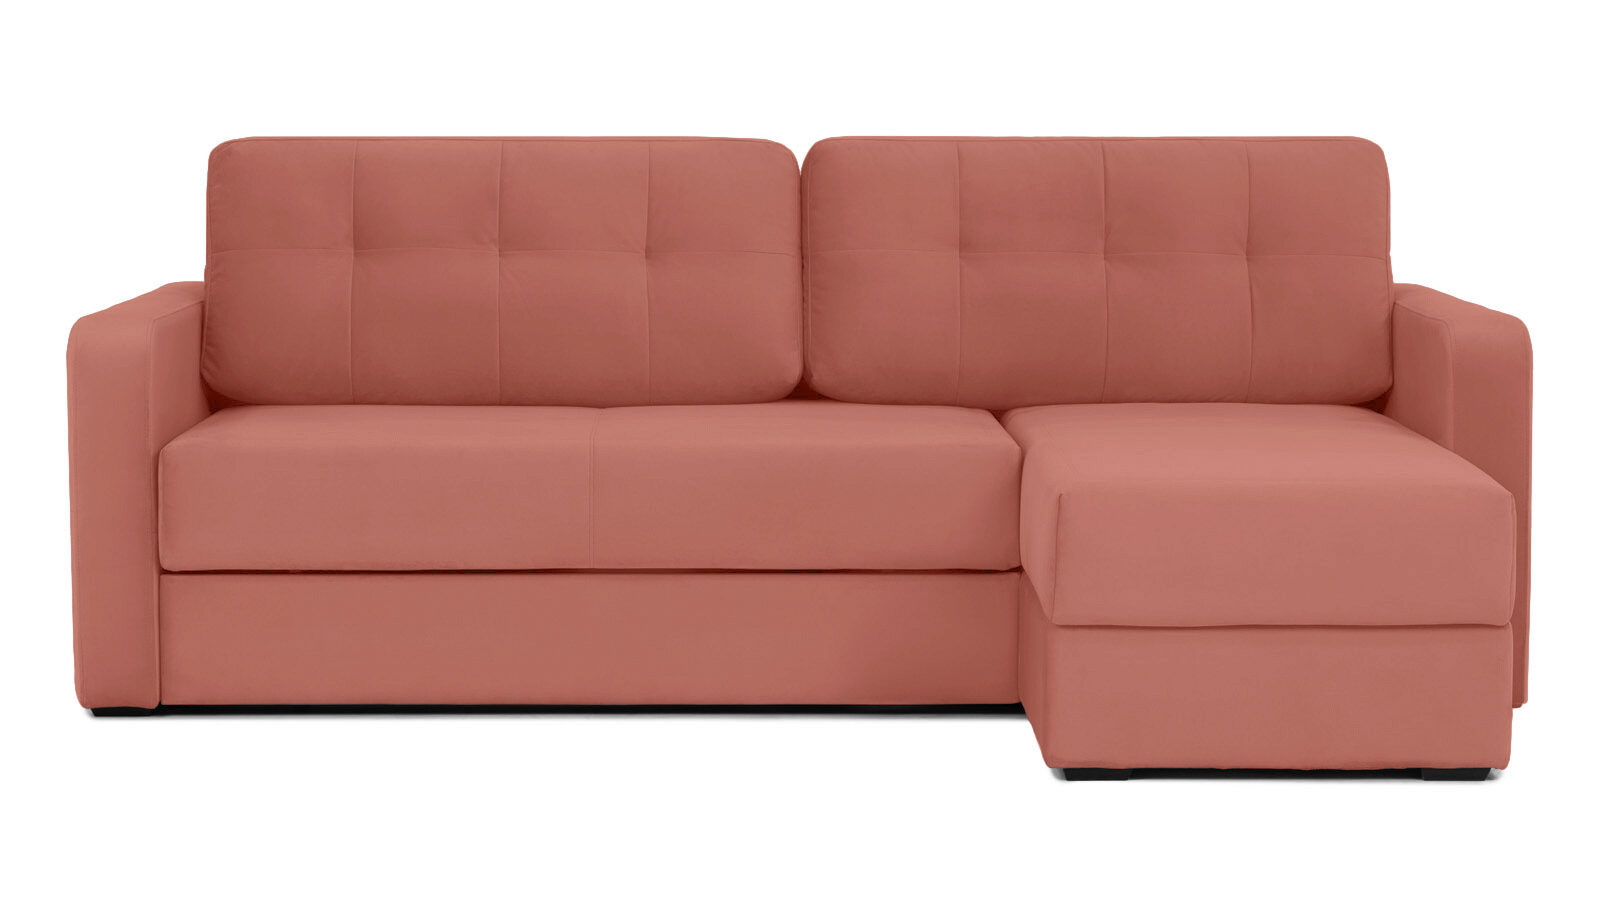 Угловой диван Loko Pro с широкими подлокотниками, с матрасом комбинированной жесткости Askona